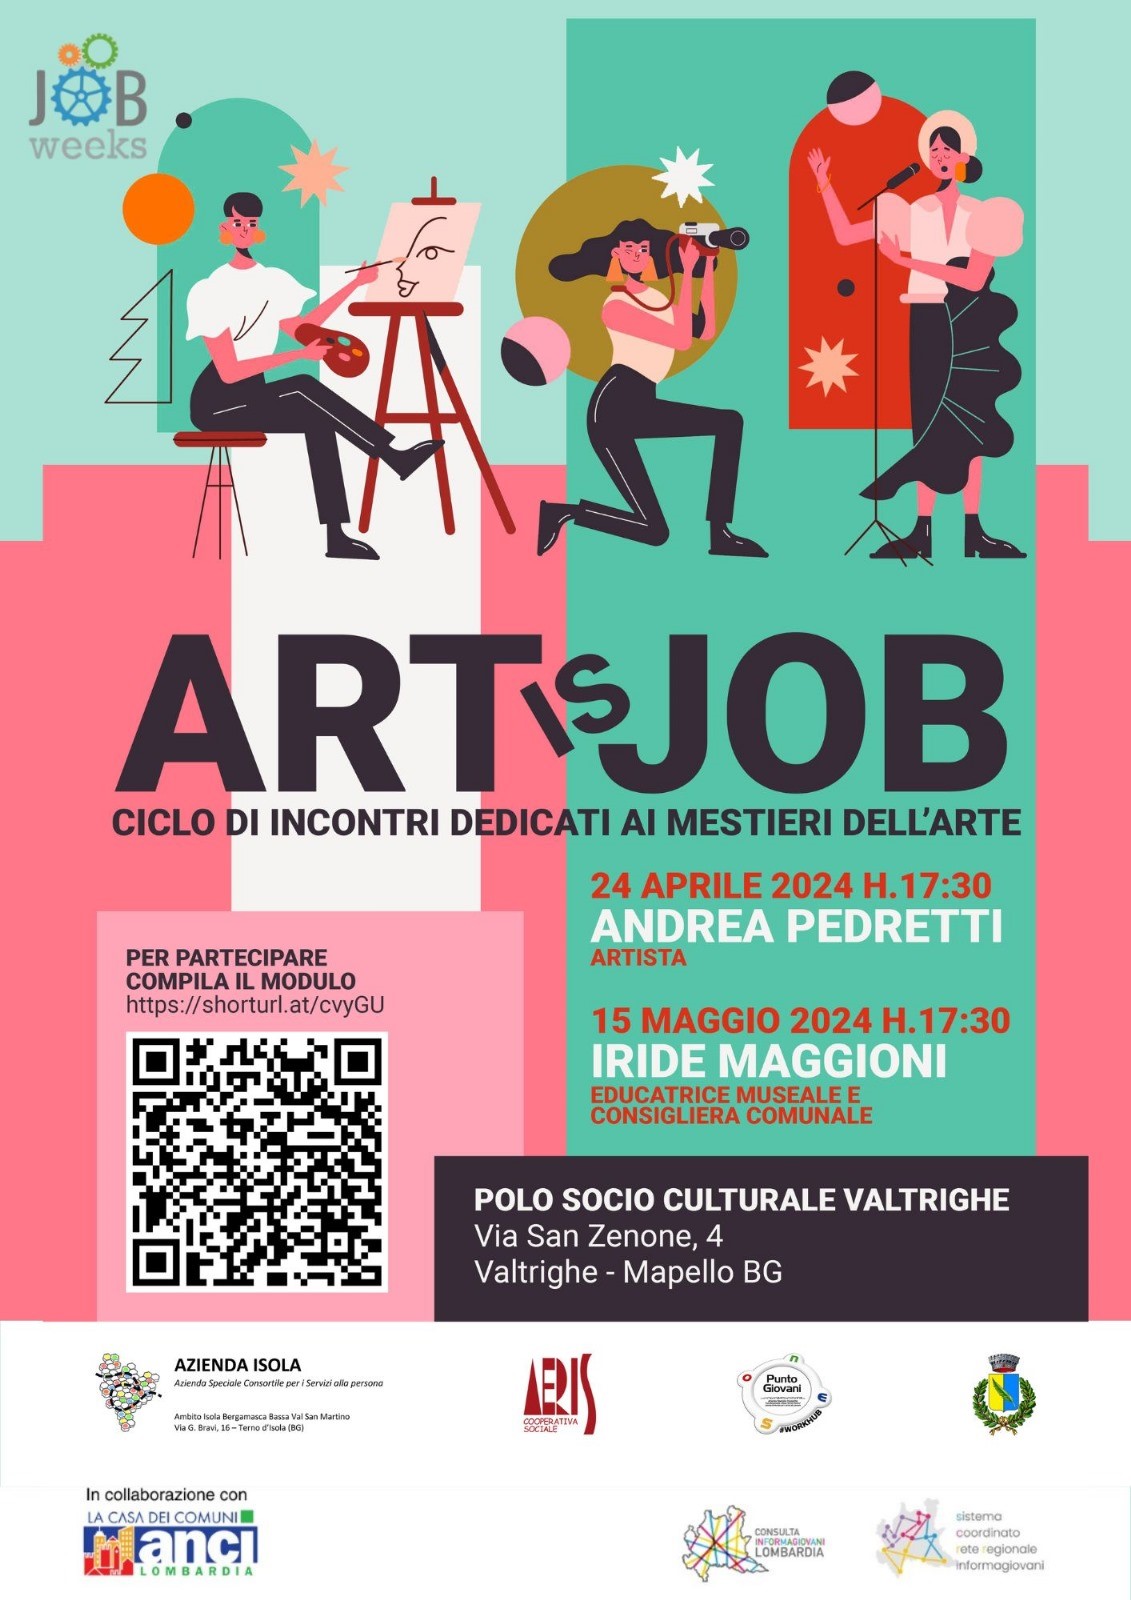 Art is Job: ciclo di incontri dedicati ai mestieri dell'arte 